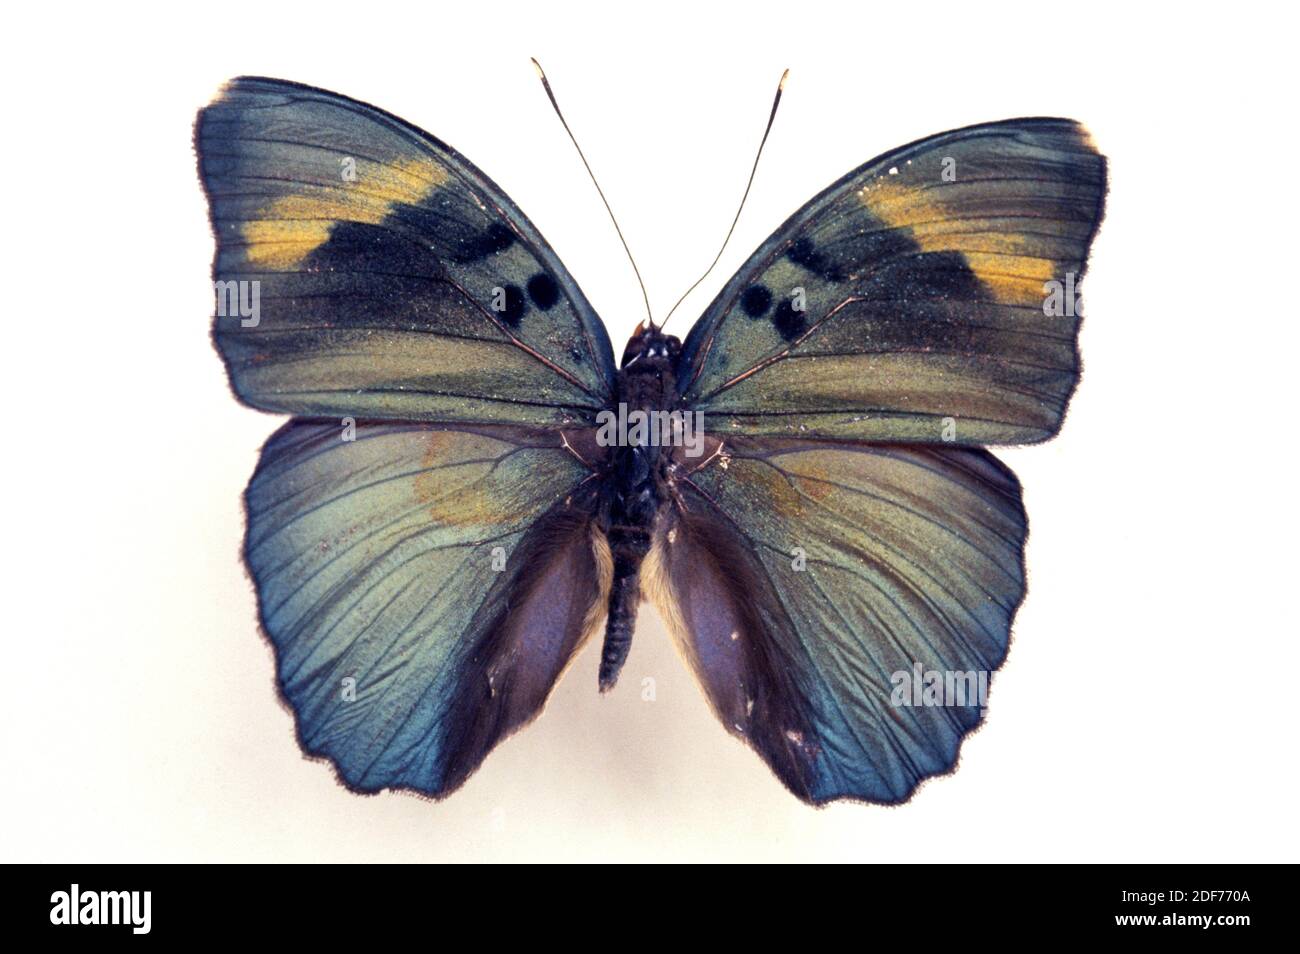 Weit verbreiteter Förster (Euphaedra medon) ist ein Schmetterling, der in Zentralafrika beheimatet ist. Männchen, dorsale Oberfläche. Stockfoto